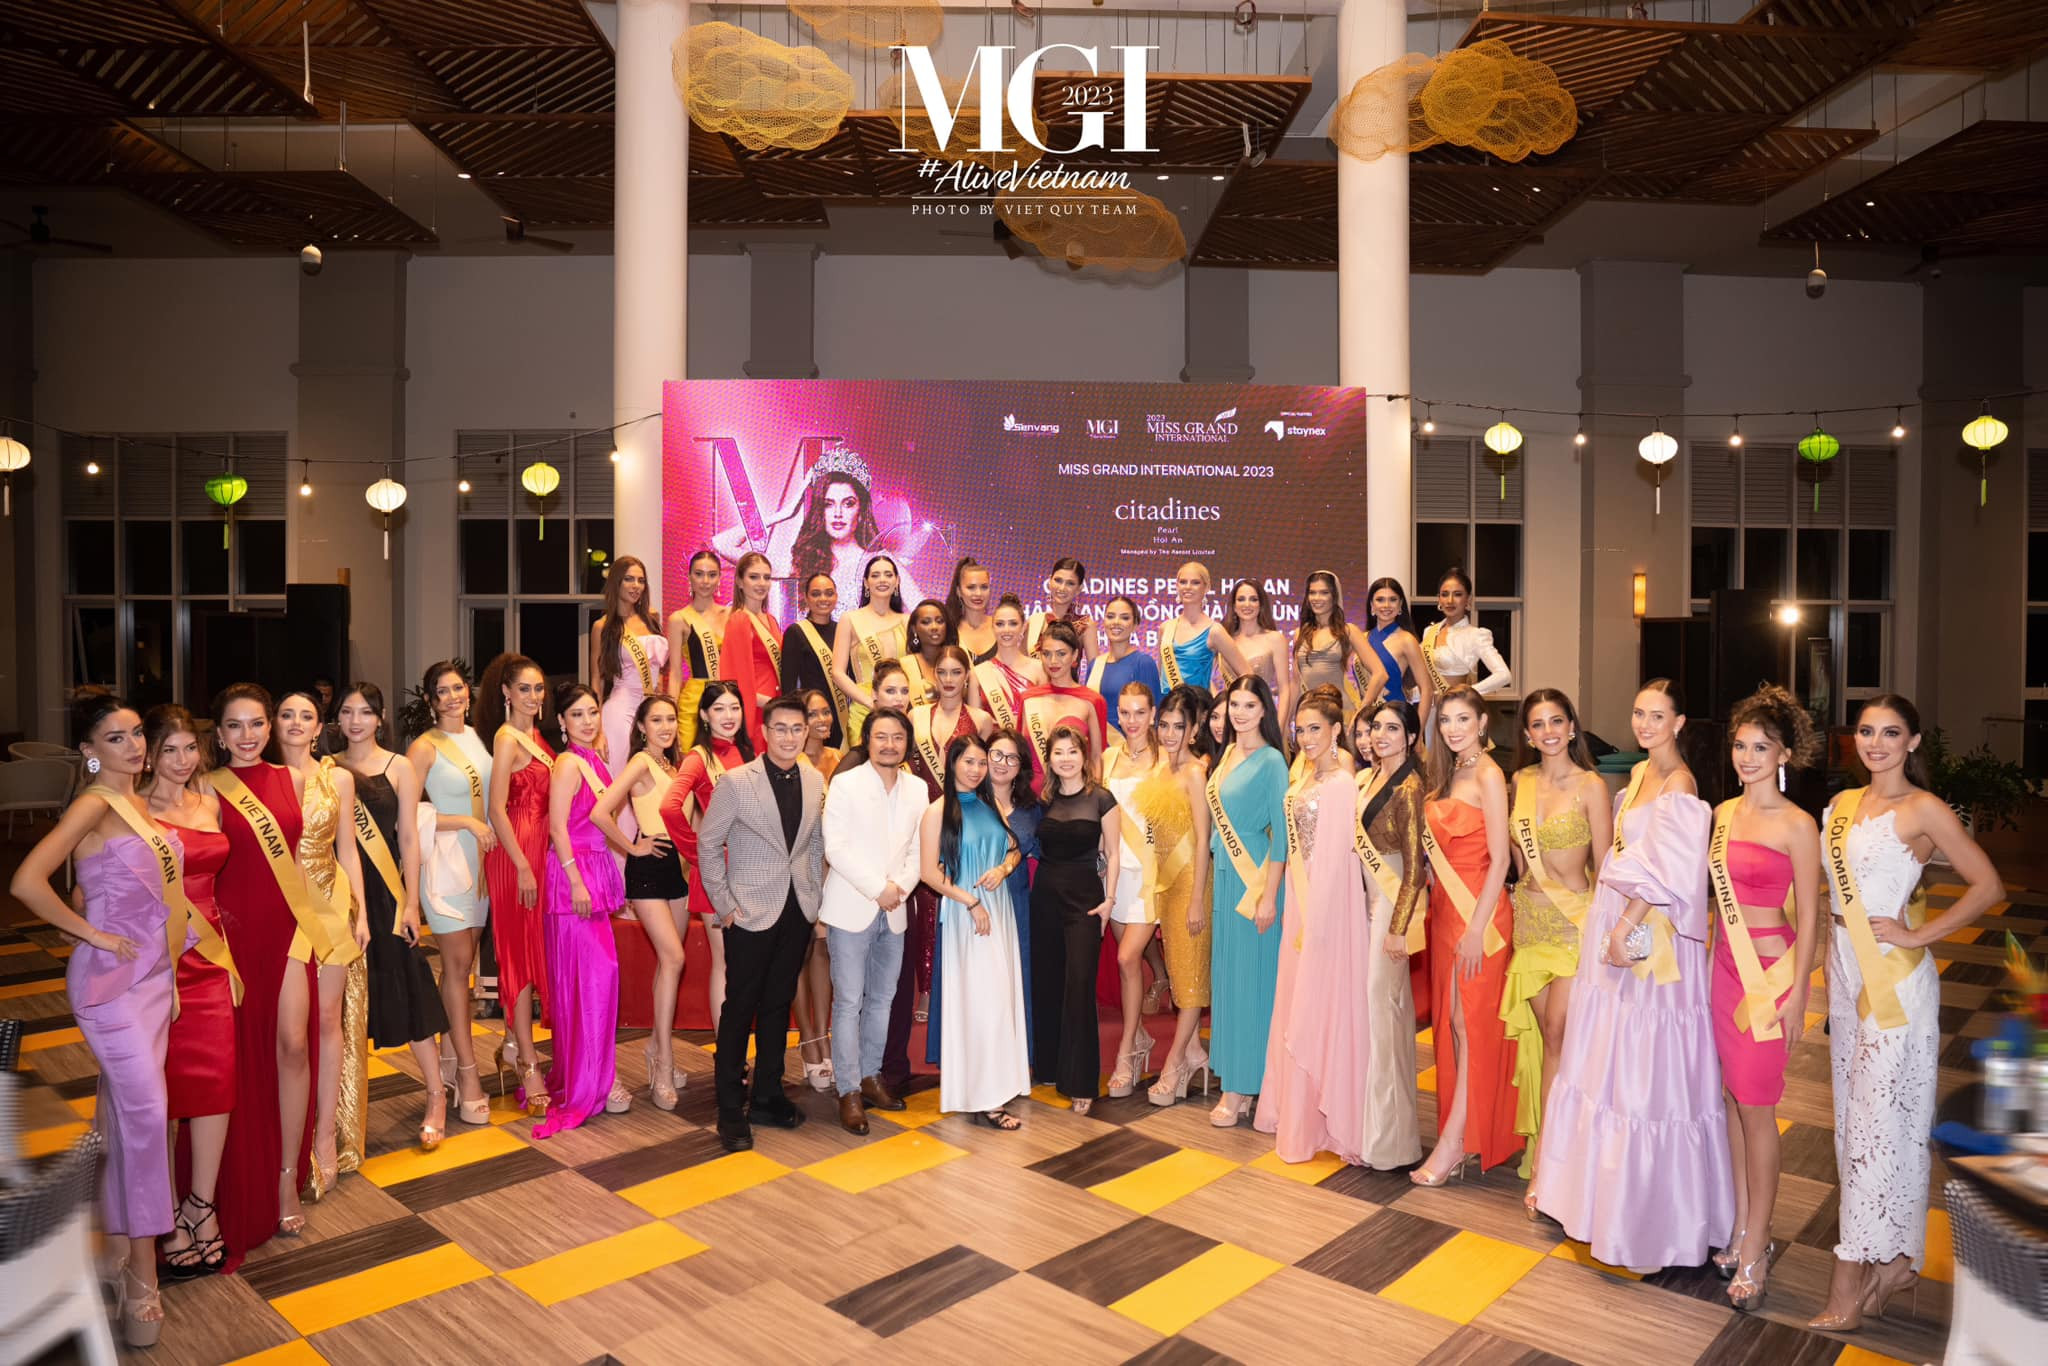  BTC và các thí sinh Miss Grand International 2023 tại Citadines Pearl Hoi An